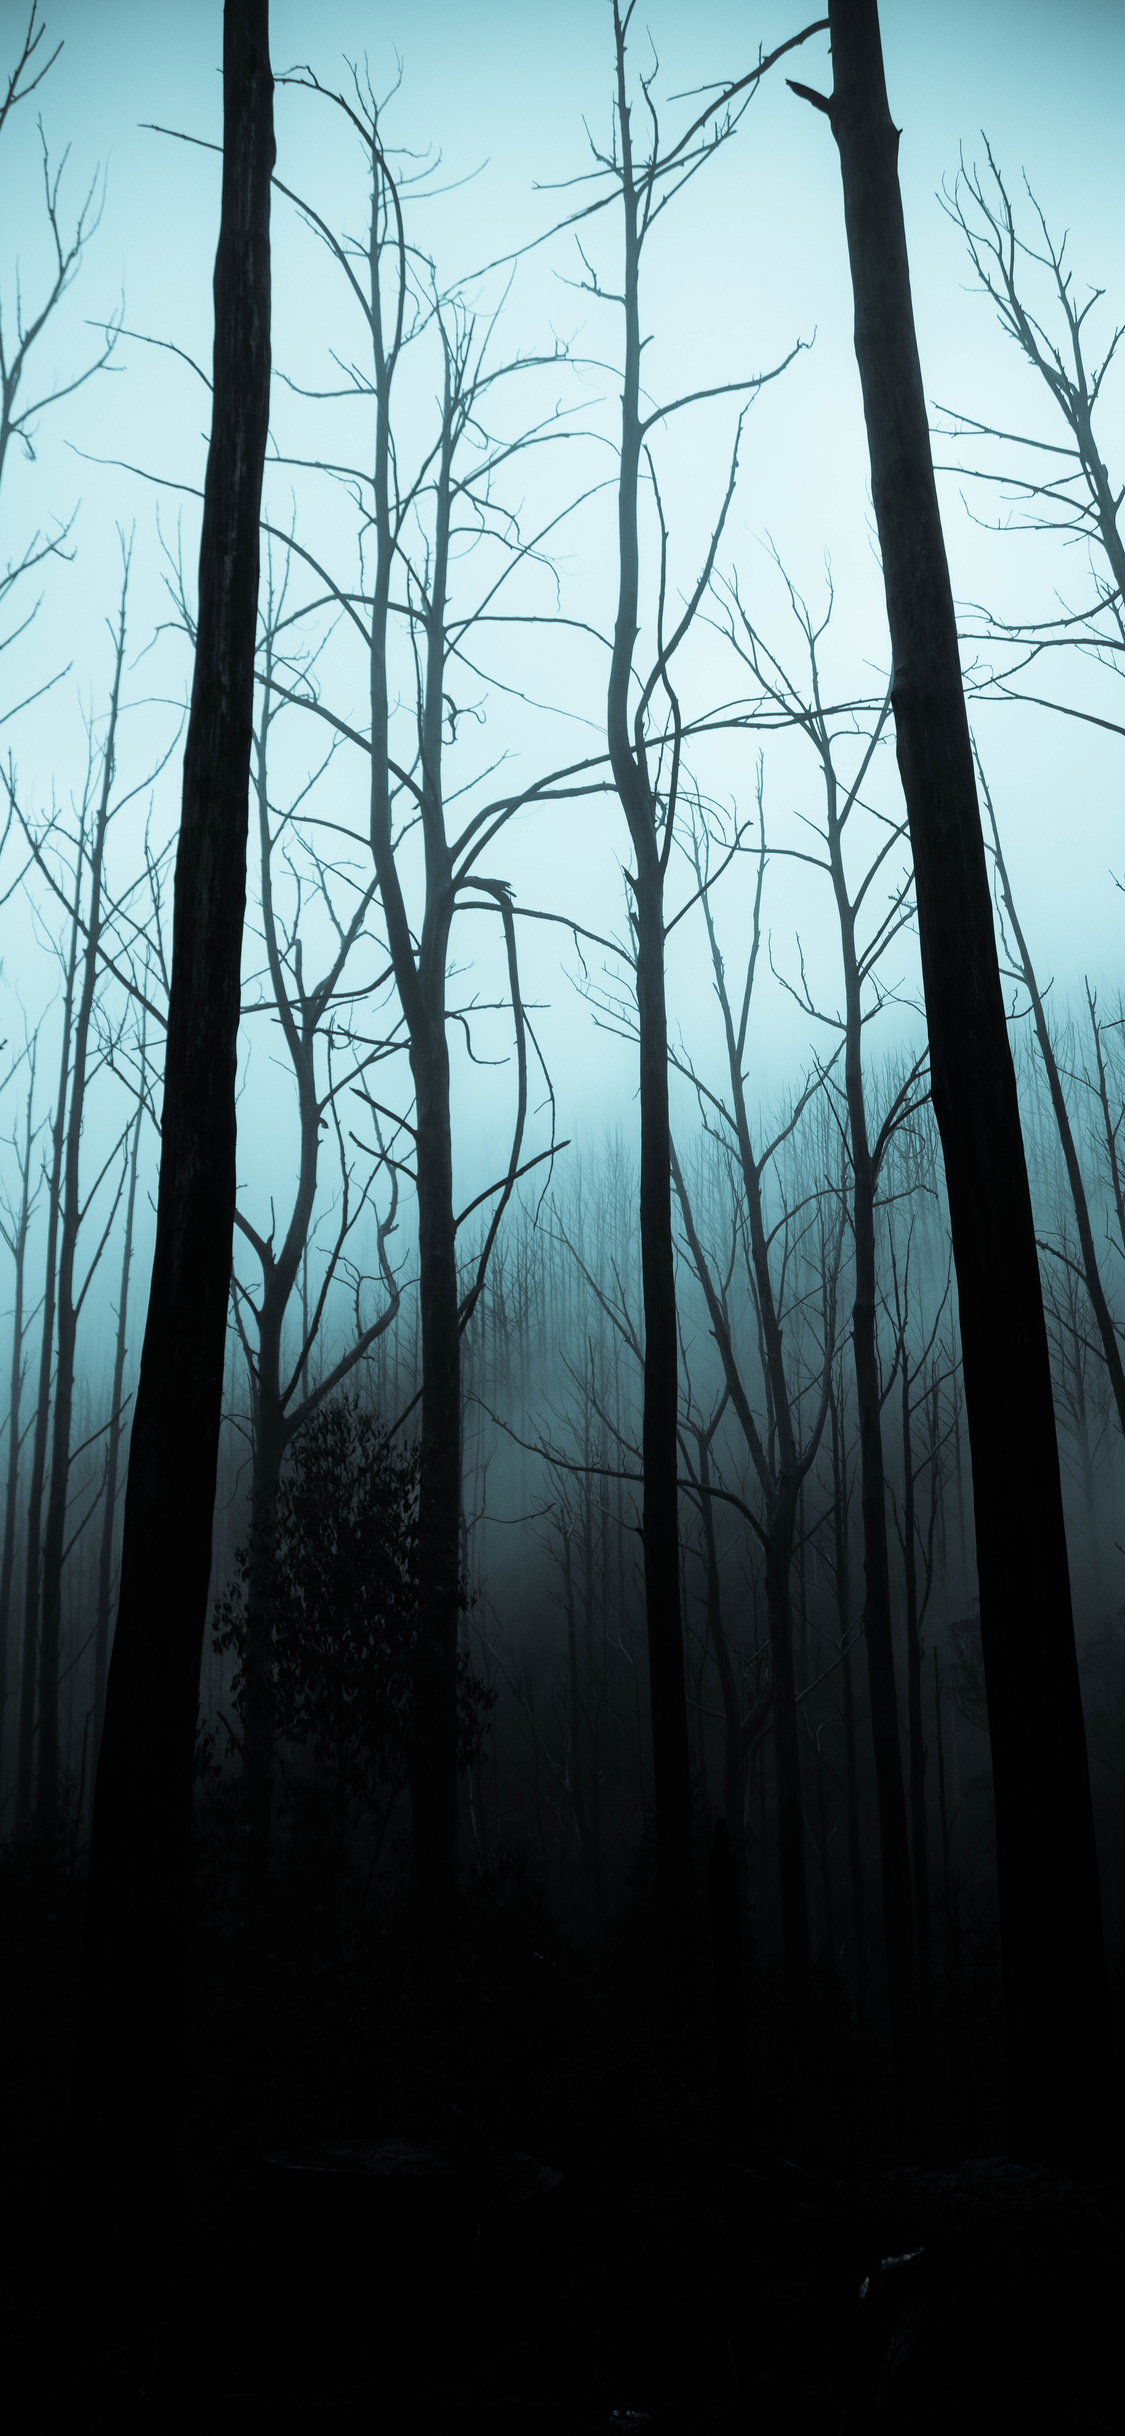 Halloween iphone wallpaper spooky woods idownloadblog jack cain